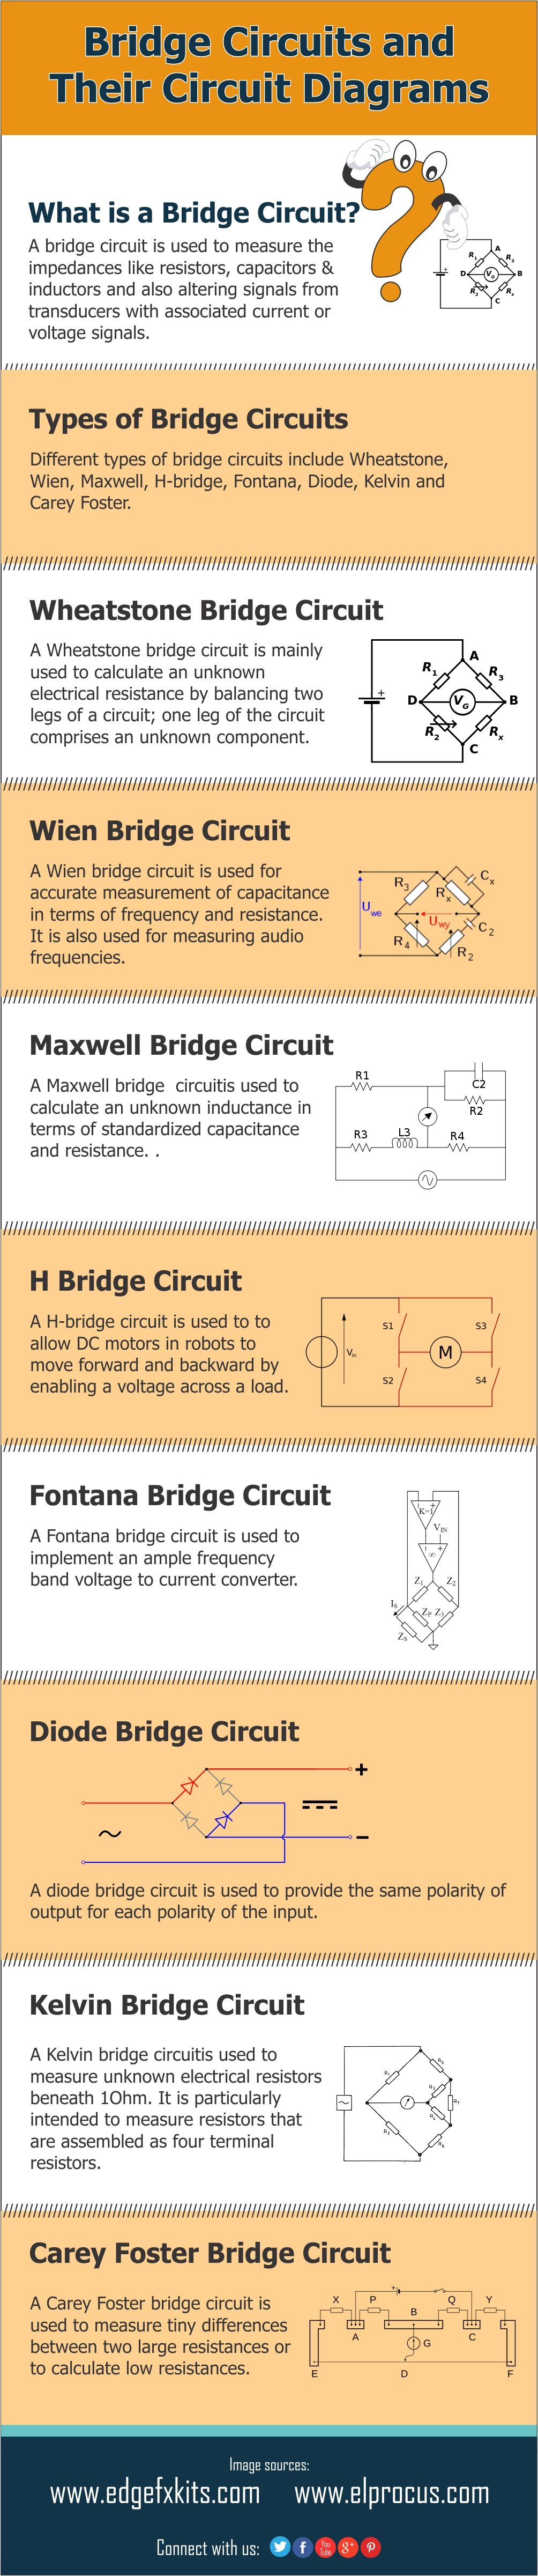 Različite vrste mostovnih krugova i njihovi krugovi